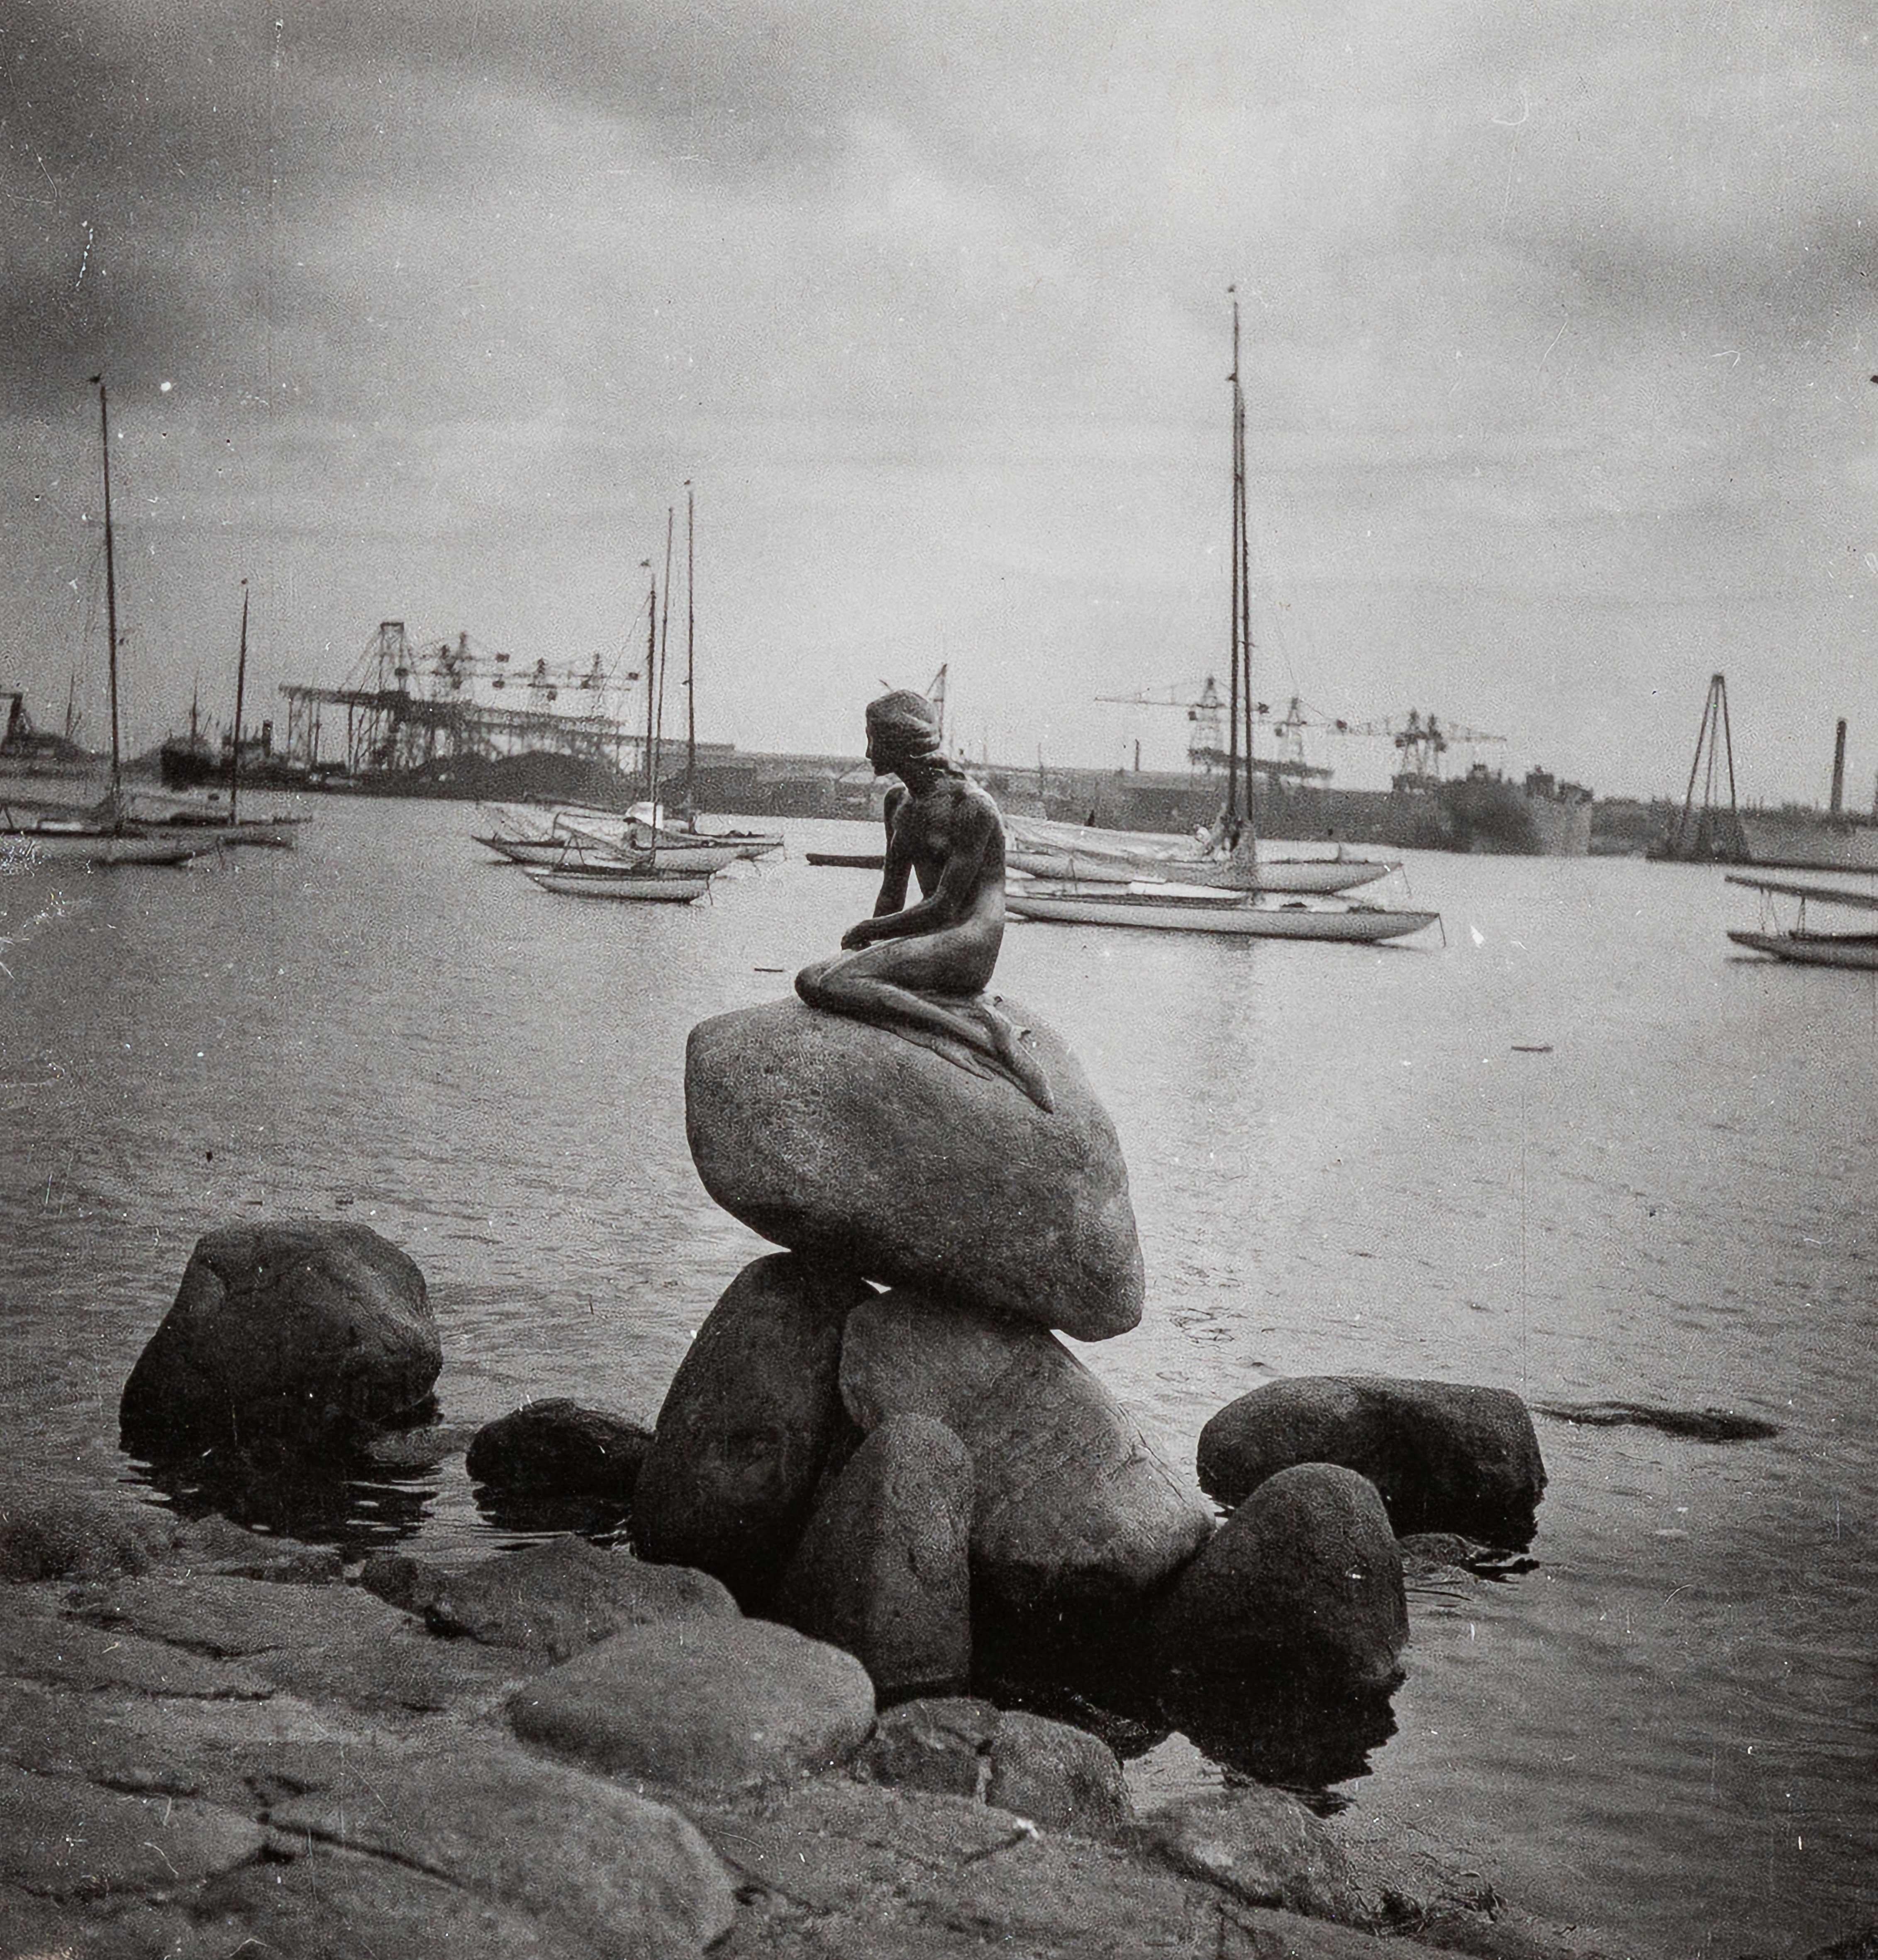 Dora Maar Black and White Photograph - The Little Mermaid, Copenhagen, I